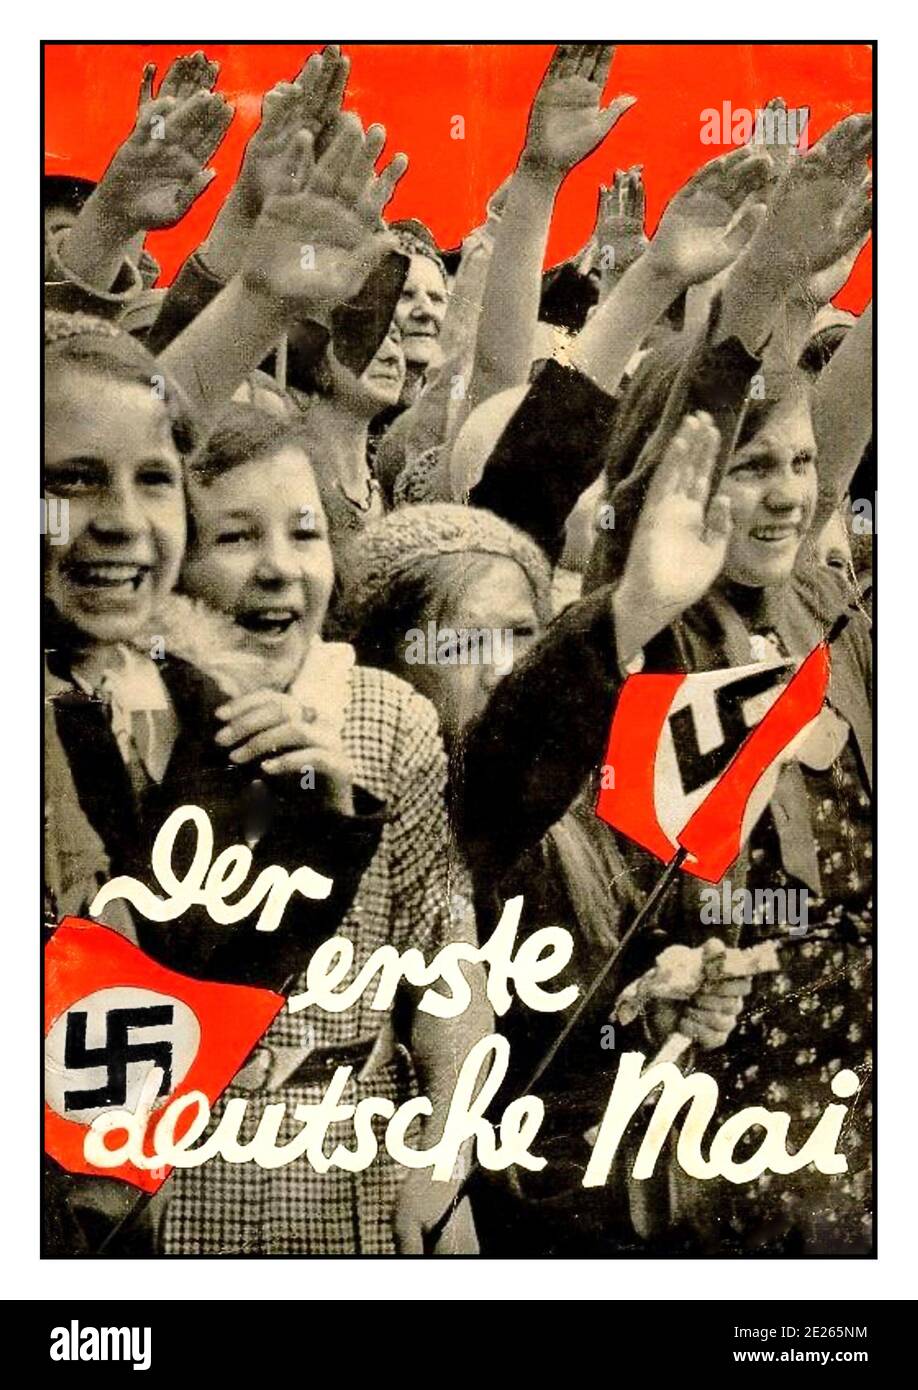 HITLER SALUE l'affiche de propagande nazie de 1933 ‘Der Erste Deutsche Mai’ affiche de propagande nazie de 1933 le premier Mai allemand’ avec des foules de jeunes filles extatiques qui agissaient les drapeaux de la swastika nazie et donnaient au Heil Hitler le salut de l'Allemagne nazie des années 1930 Banque D'Images